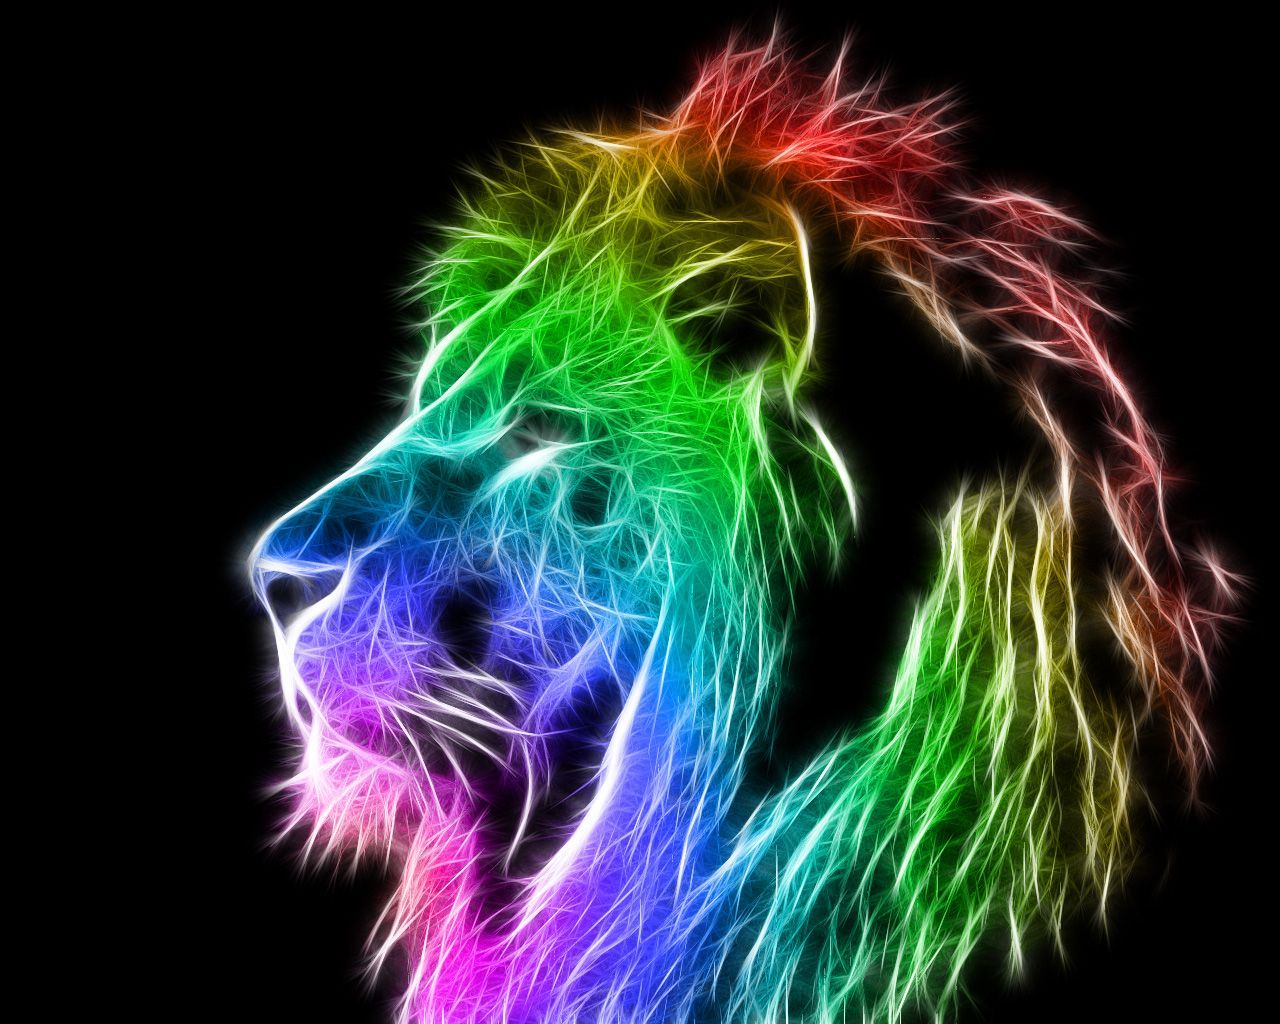 Colorful Lion wallpaper. Lion wallpaper, Lion picture, Lion HD